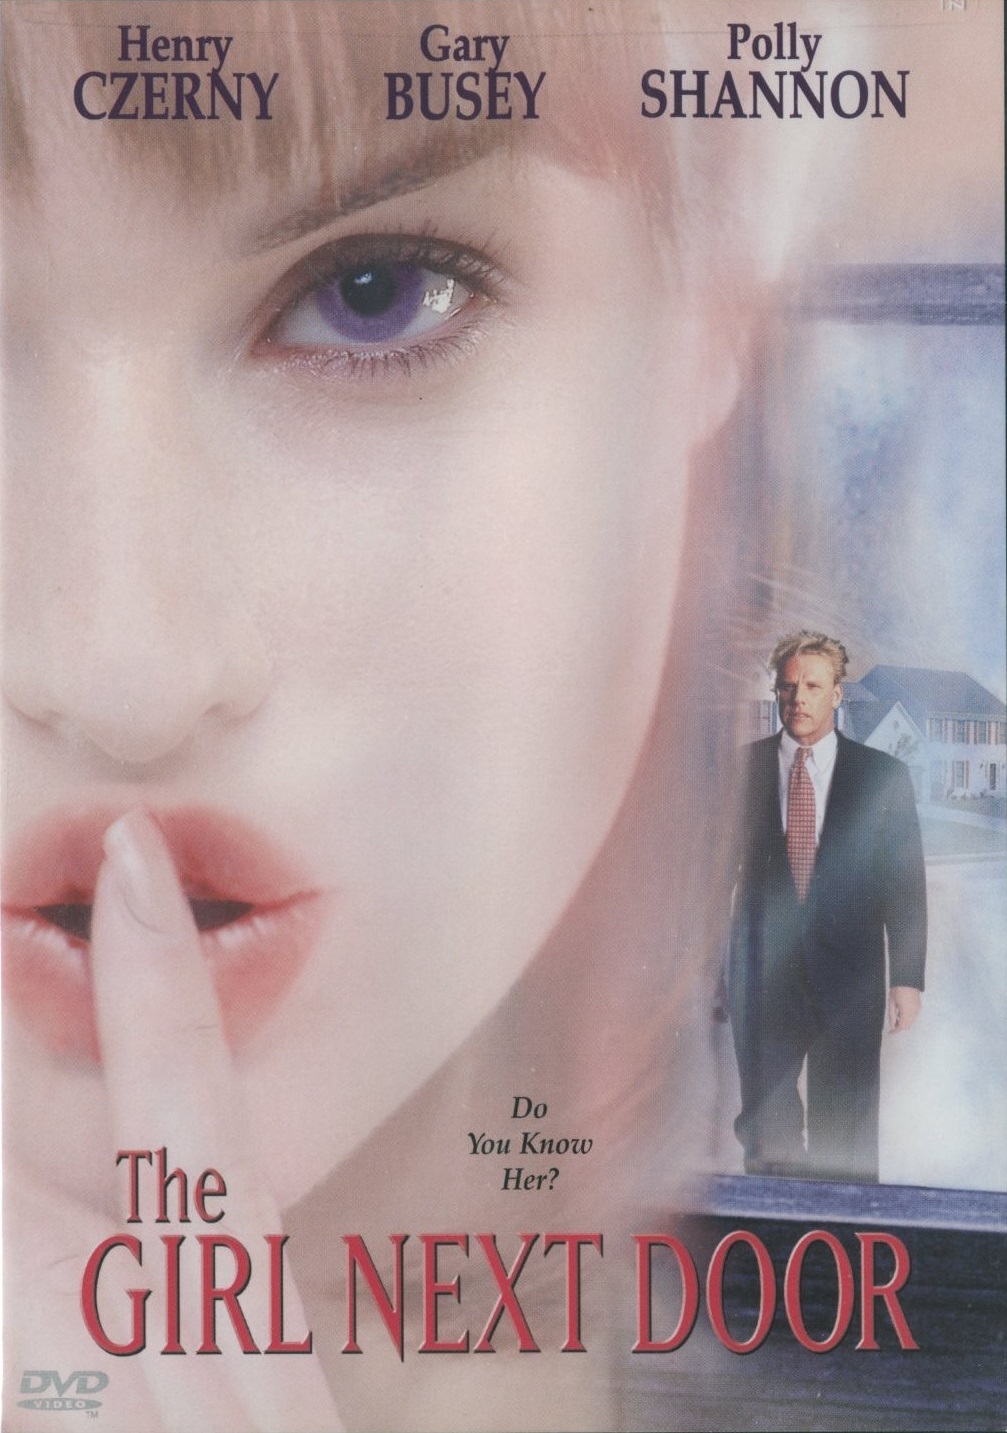 The Girl Next Door (1998) Screenshot 3